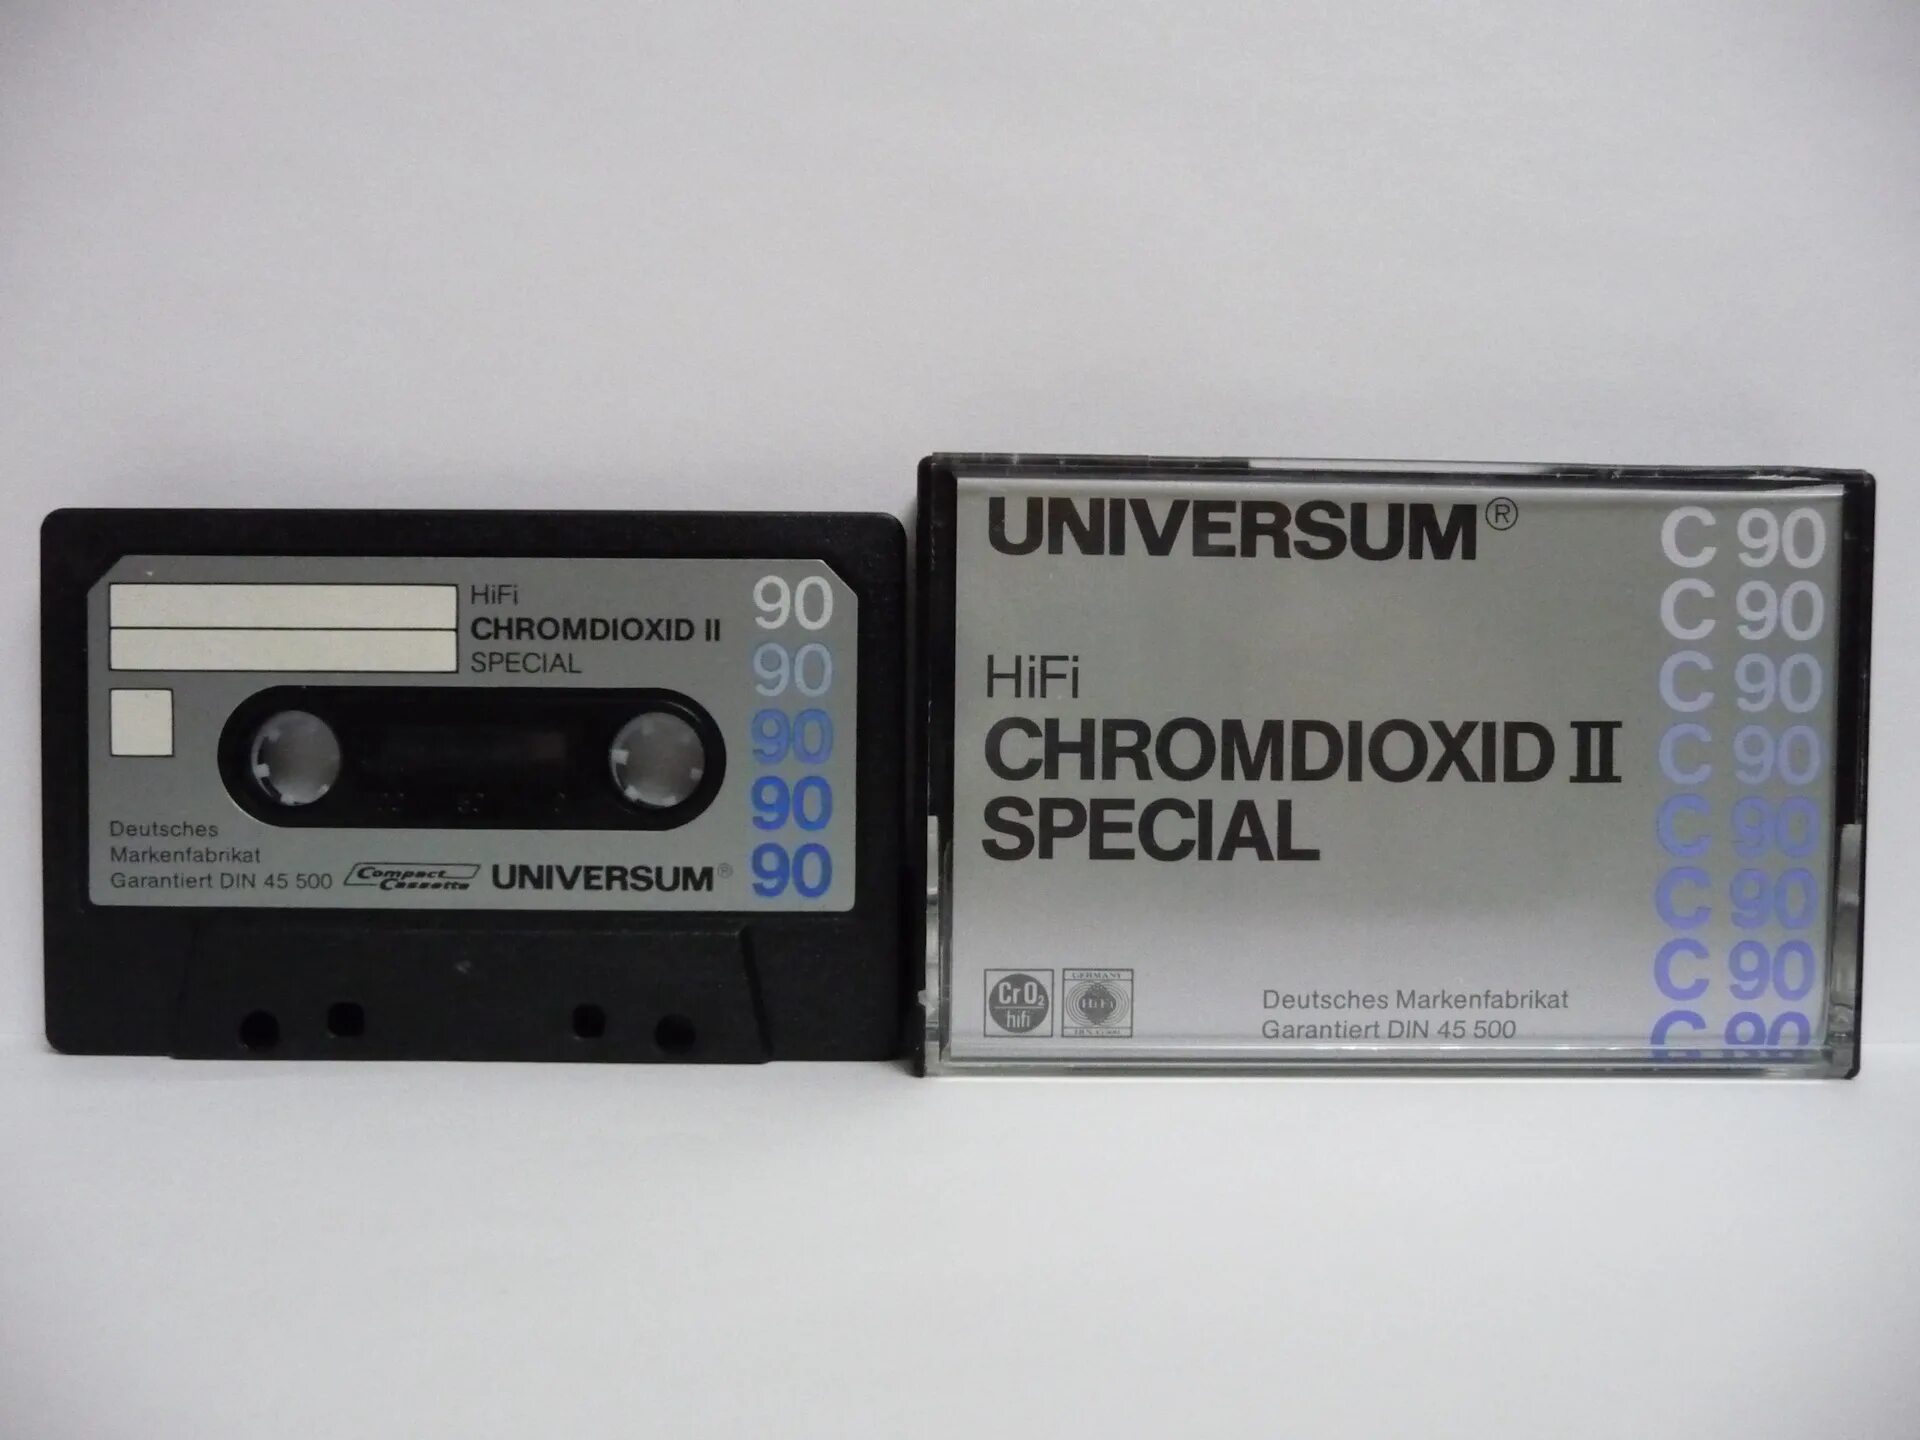 Стик universum. Universum 90 аудиокассета. Вкладыш для кассеты. Обложка кассеты. Аудиокассета Agfa.